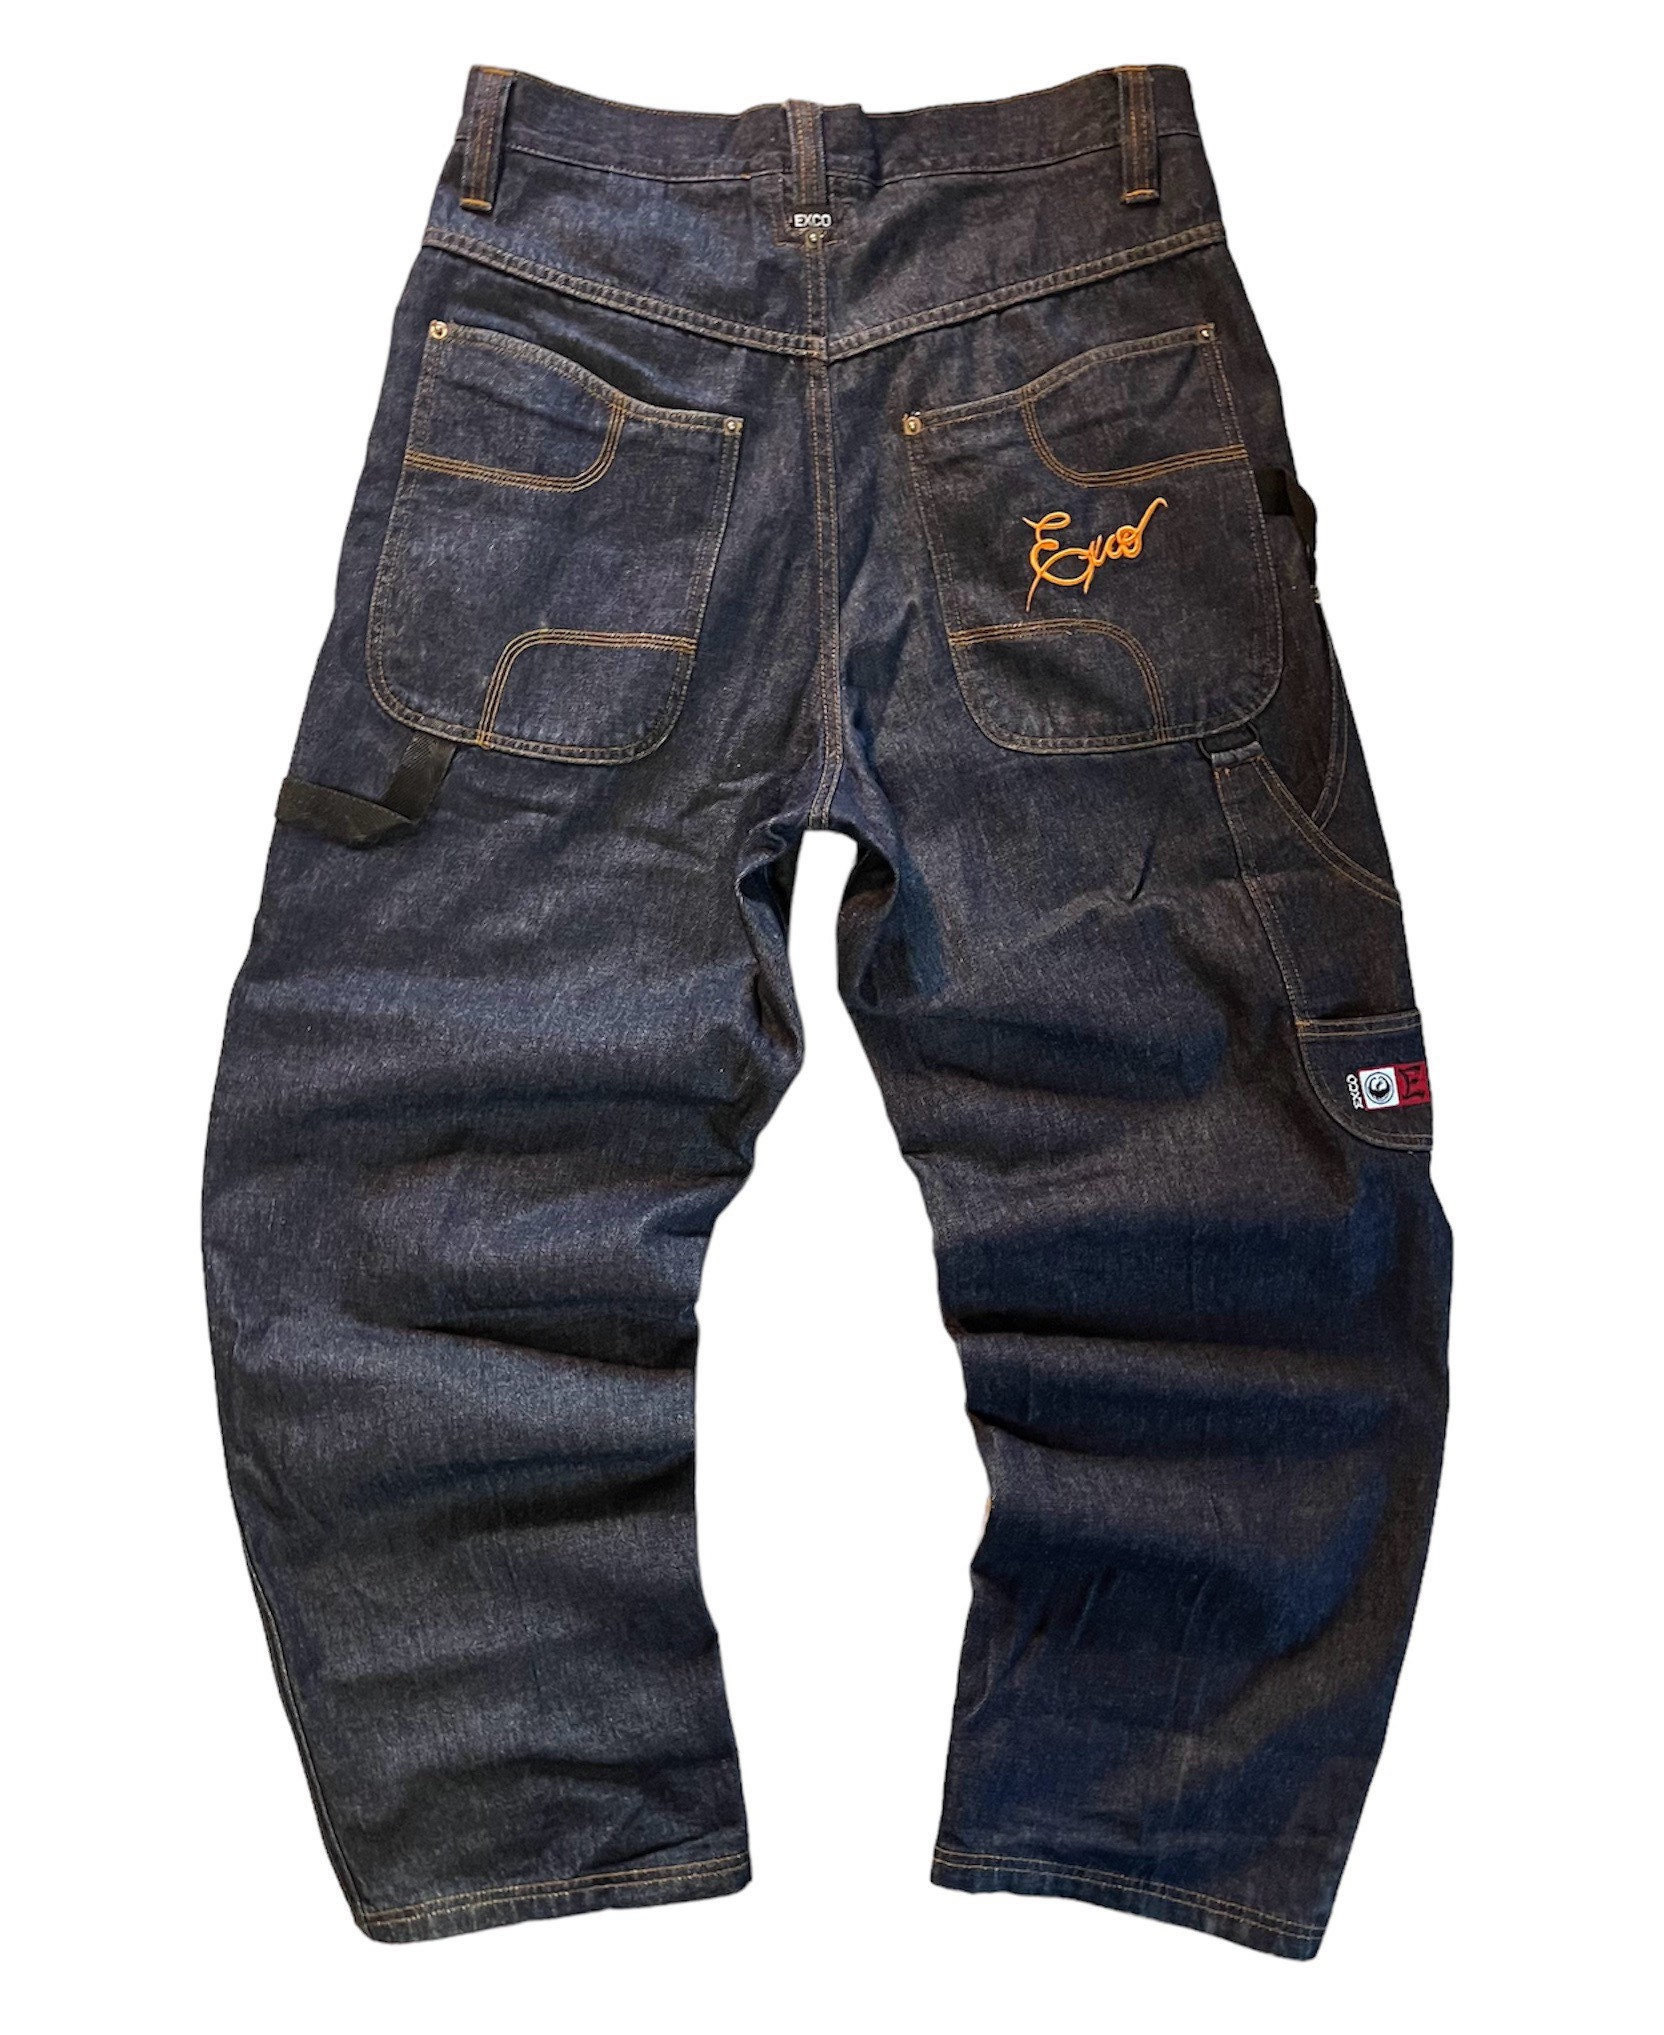 Vintage Exco Carpenter Jeans Size 34 Hop Style Jeans -